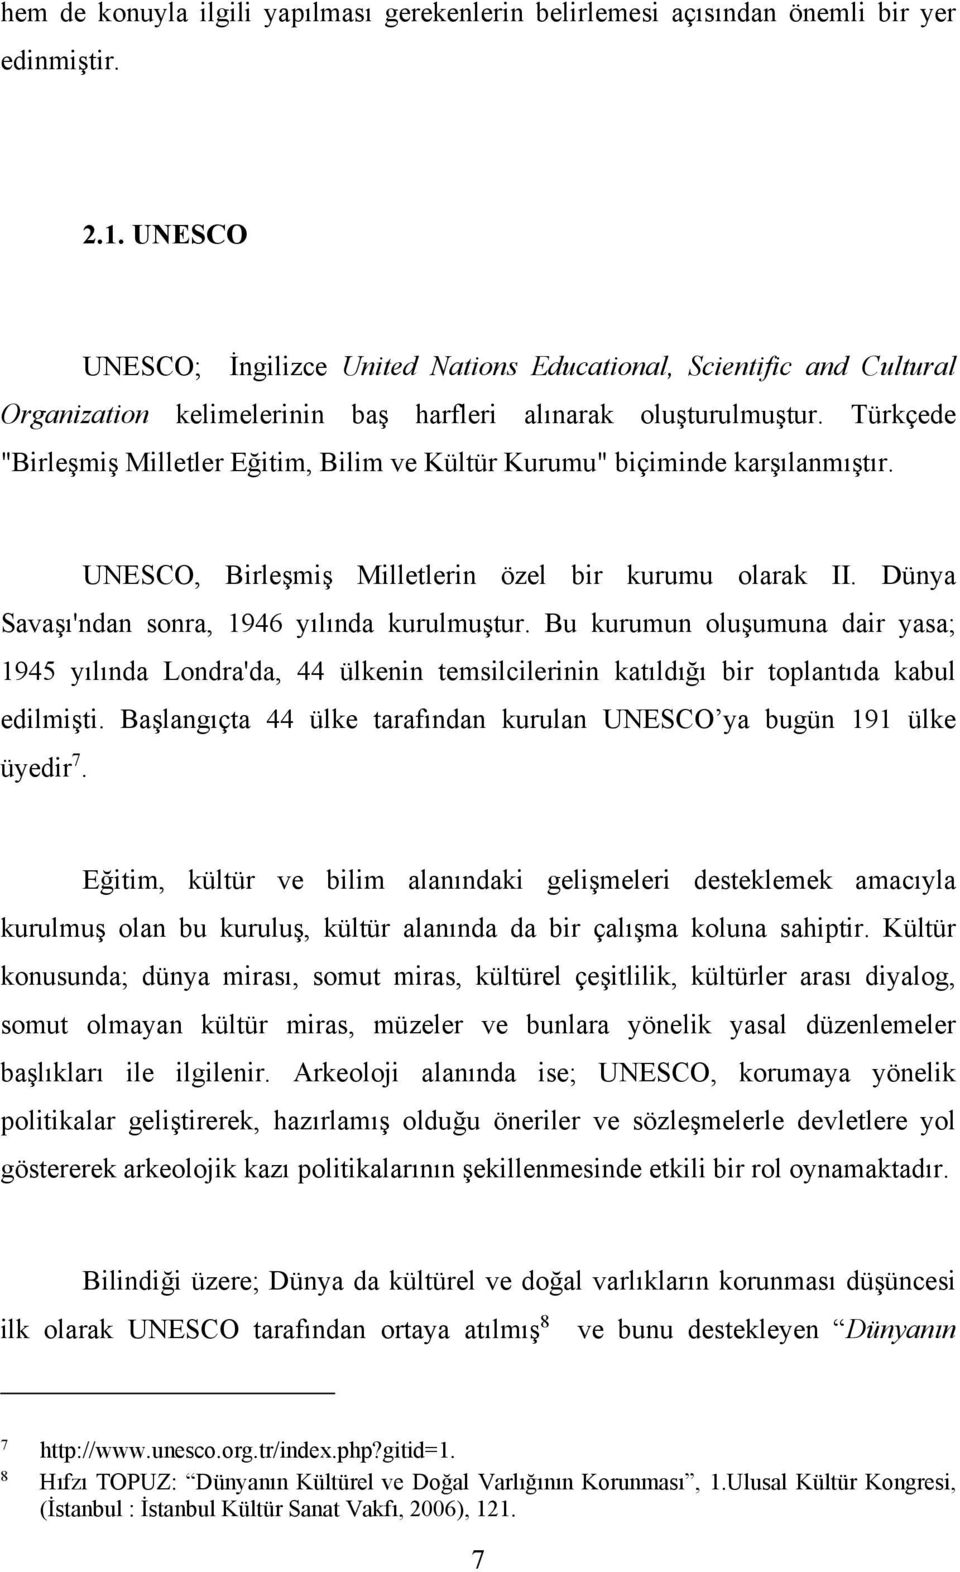 Türkçede "Birleşmiş Milletler Eğitim, Bilim ve Kültür Kurumu" biçiminde karşılanmıştır. UNESCO, Birleşmiş Milletlerin özel bir kurumu olarak II. Dünya Savaşı'ndan sonra, 1946 yılında kurulmuştur.